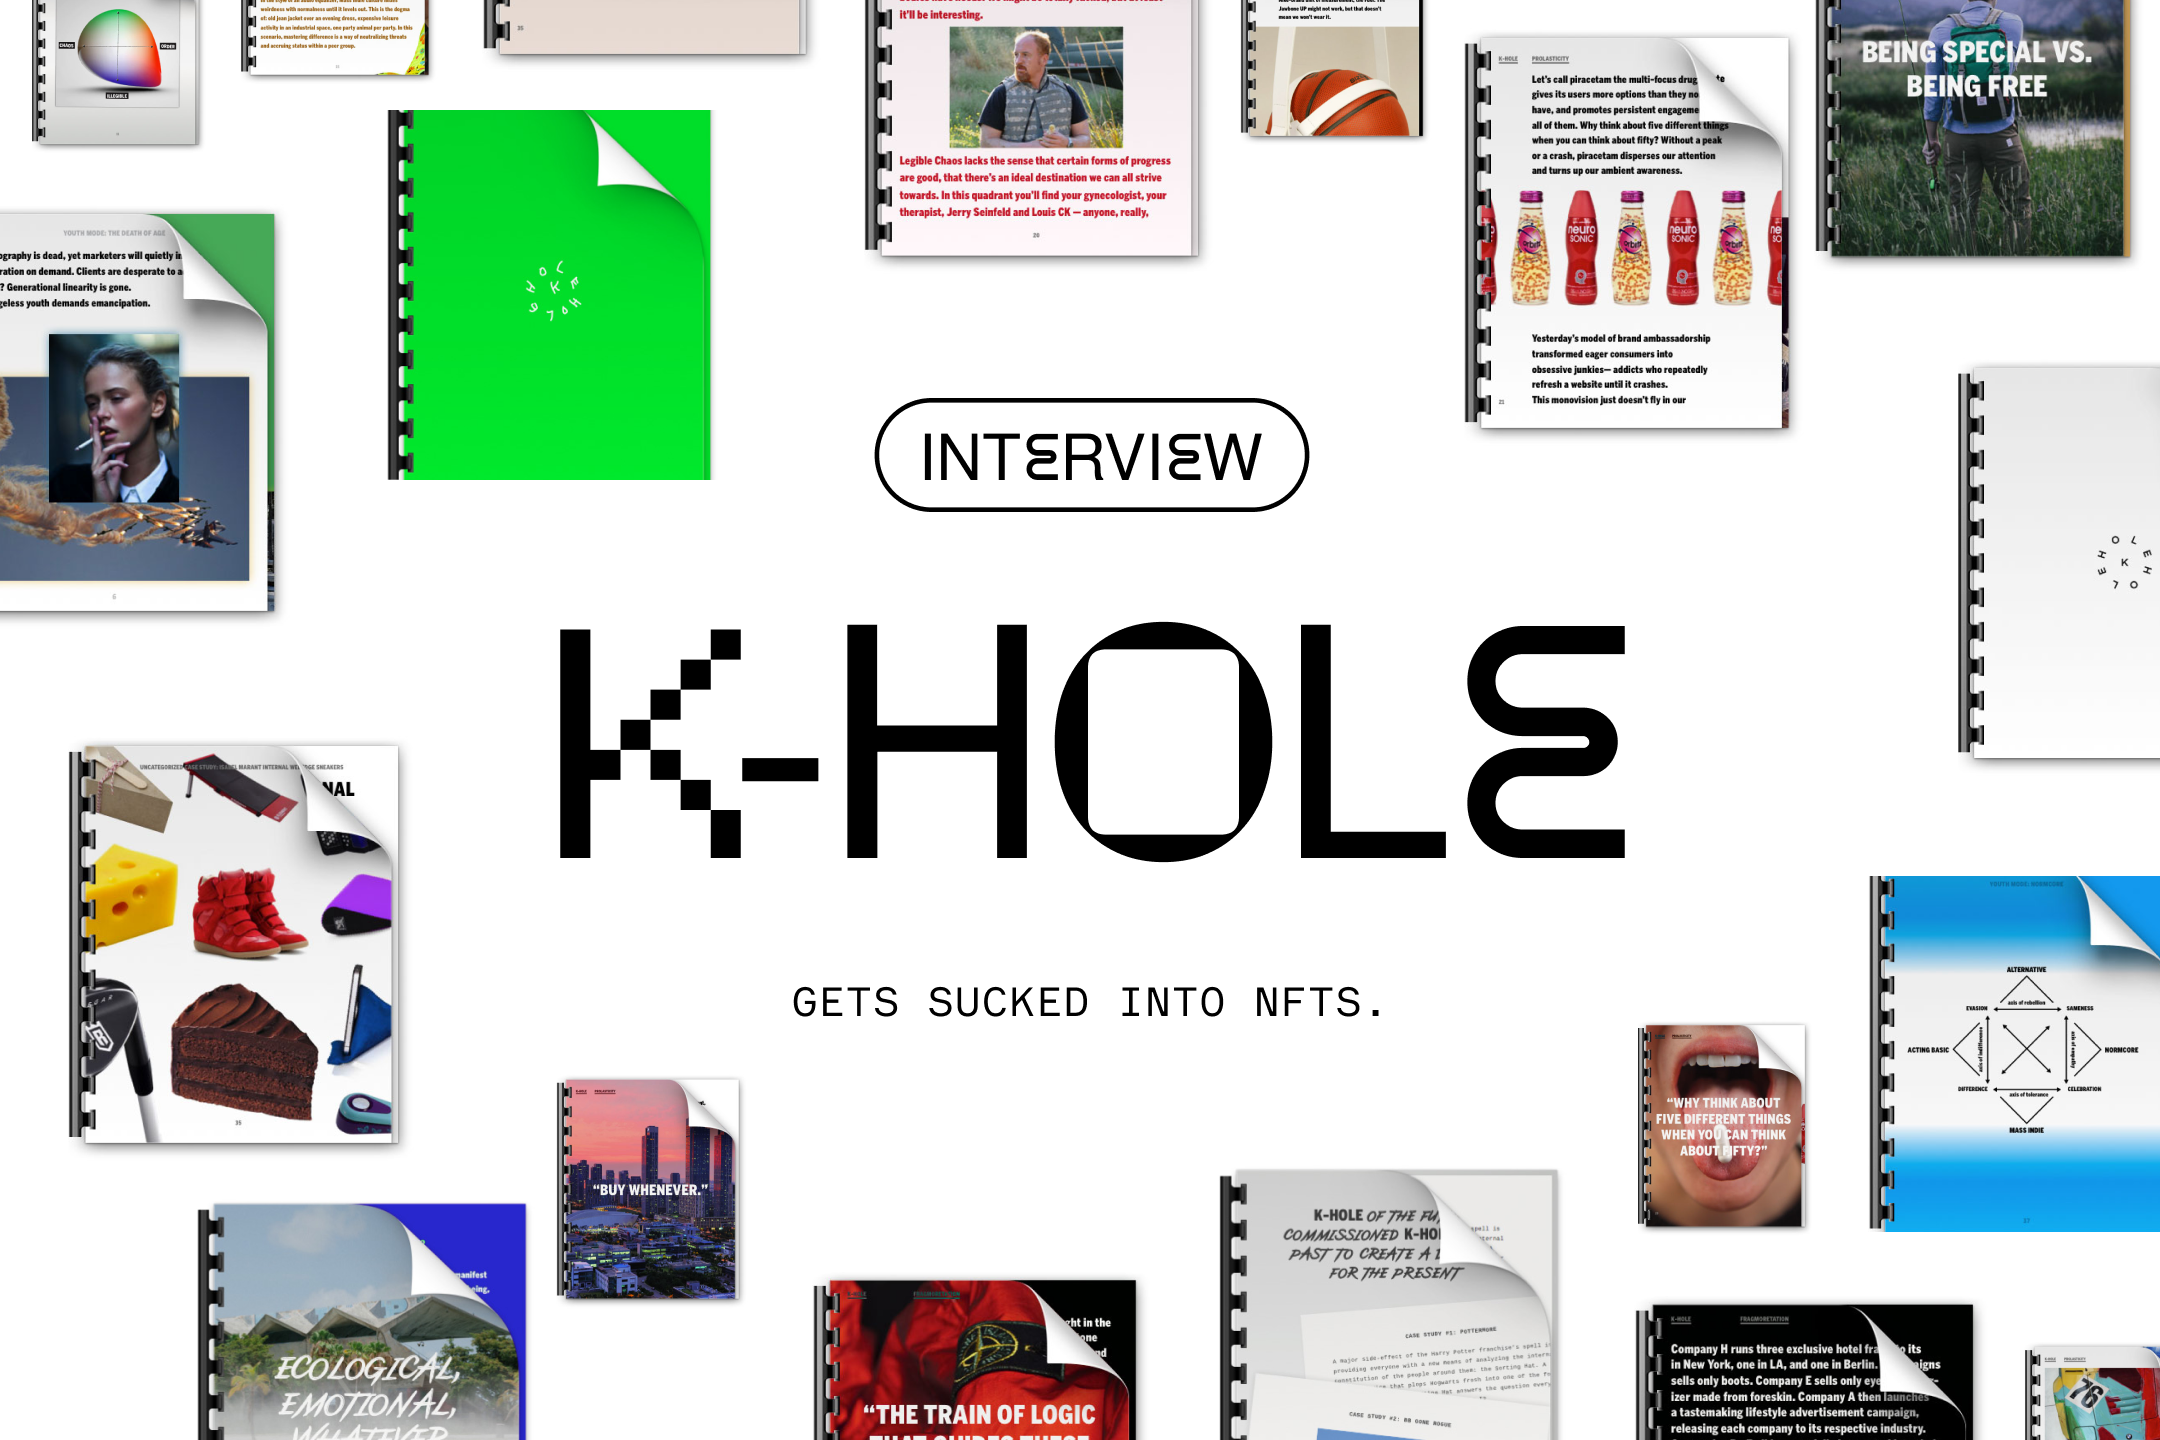 K Hole